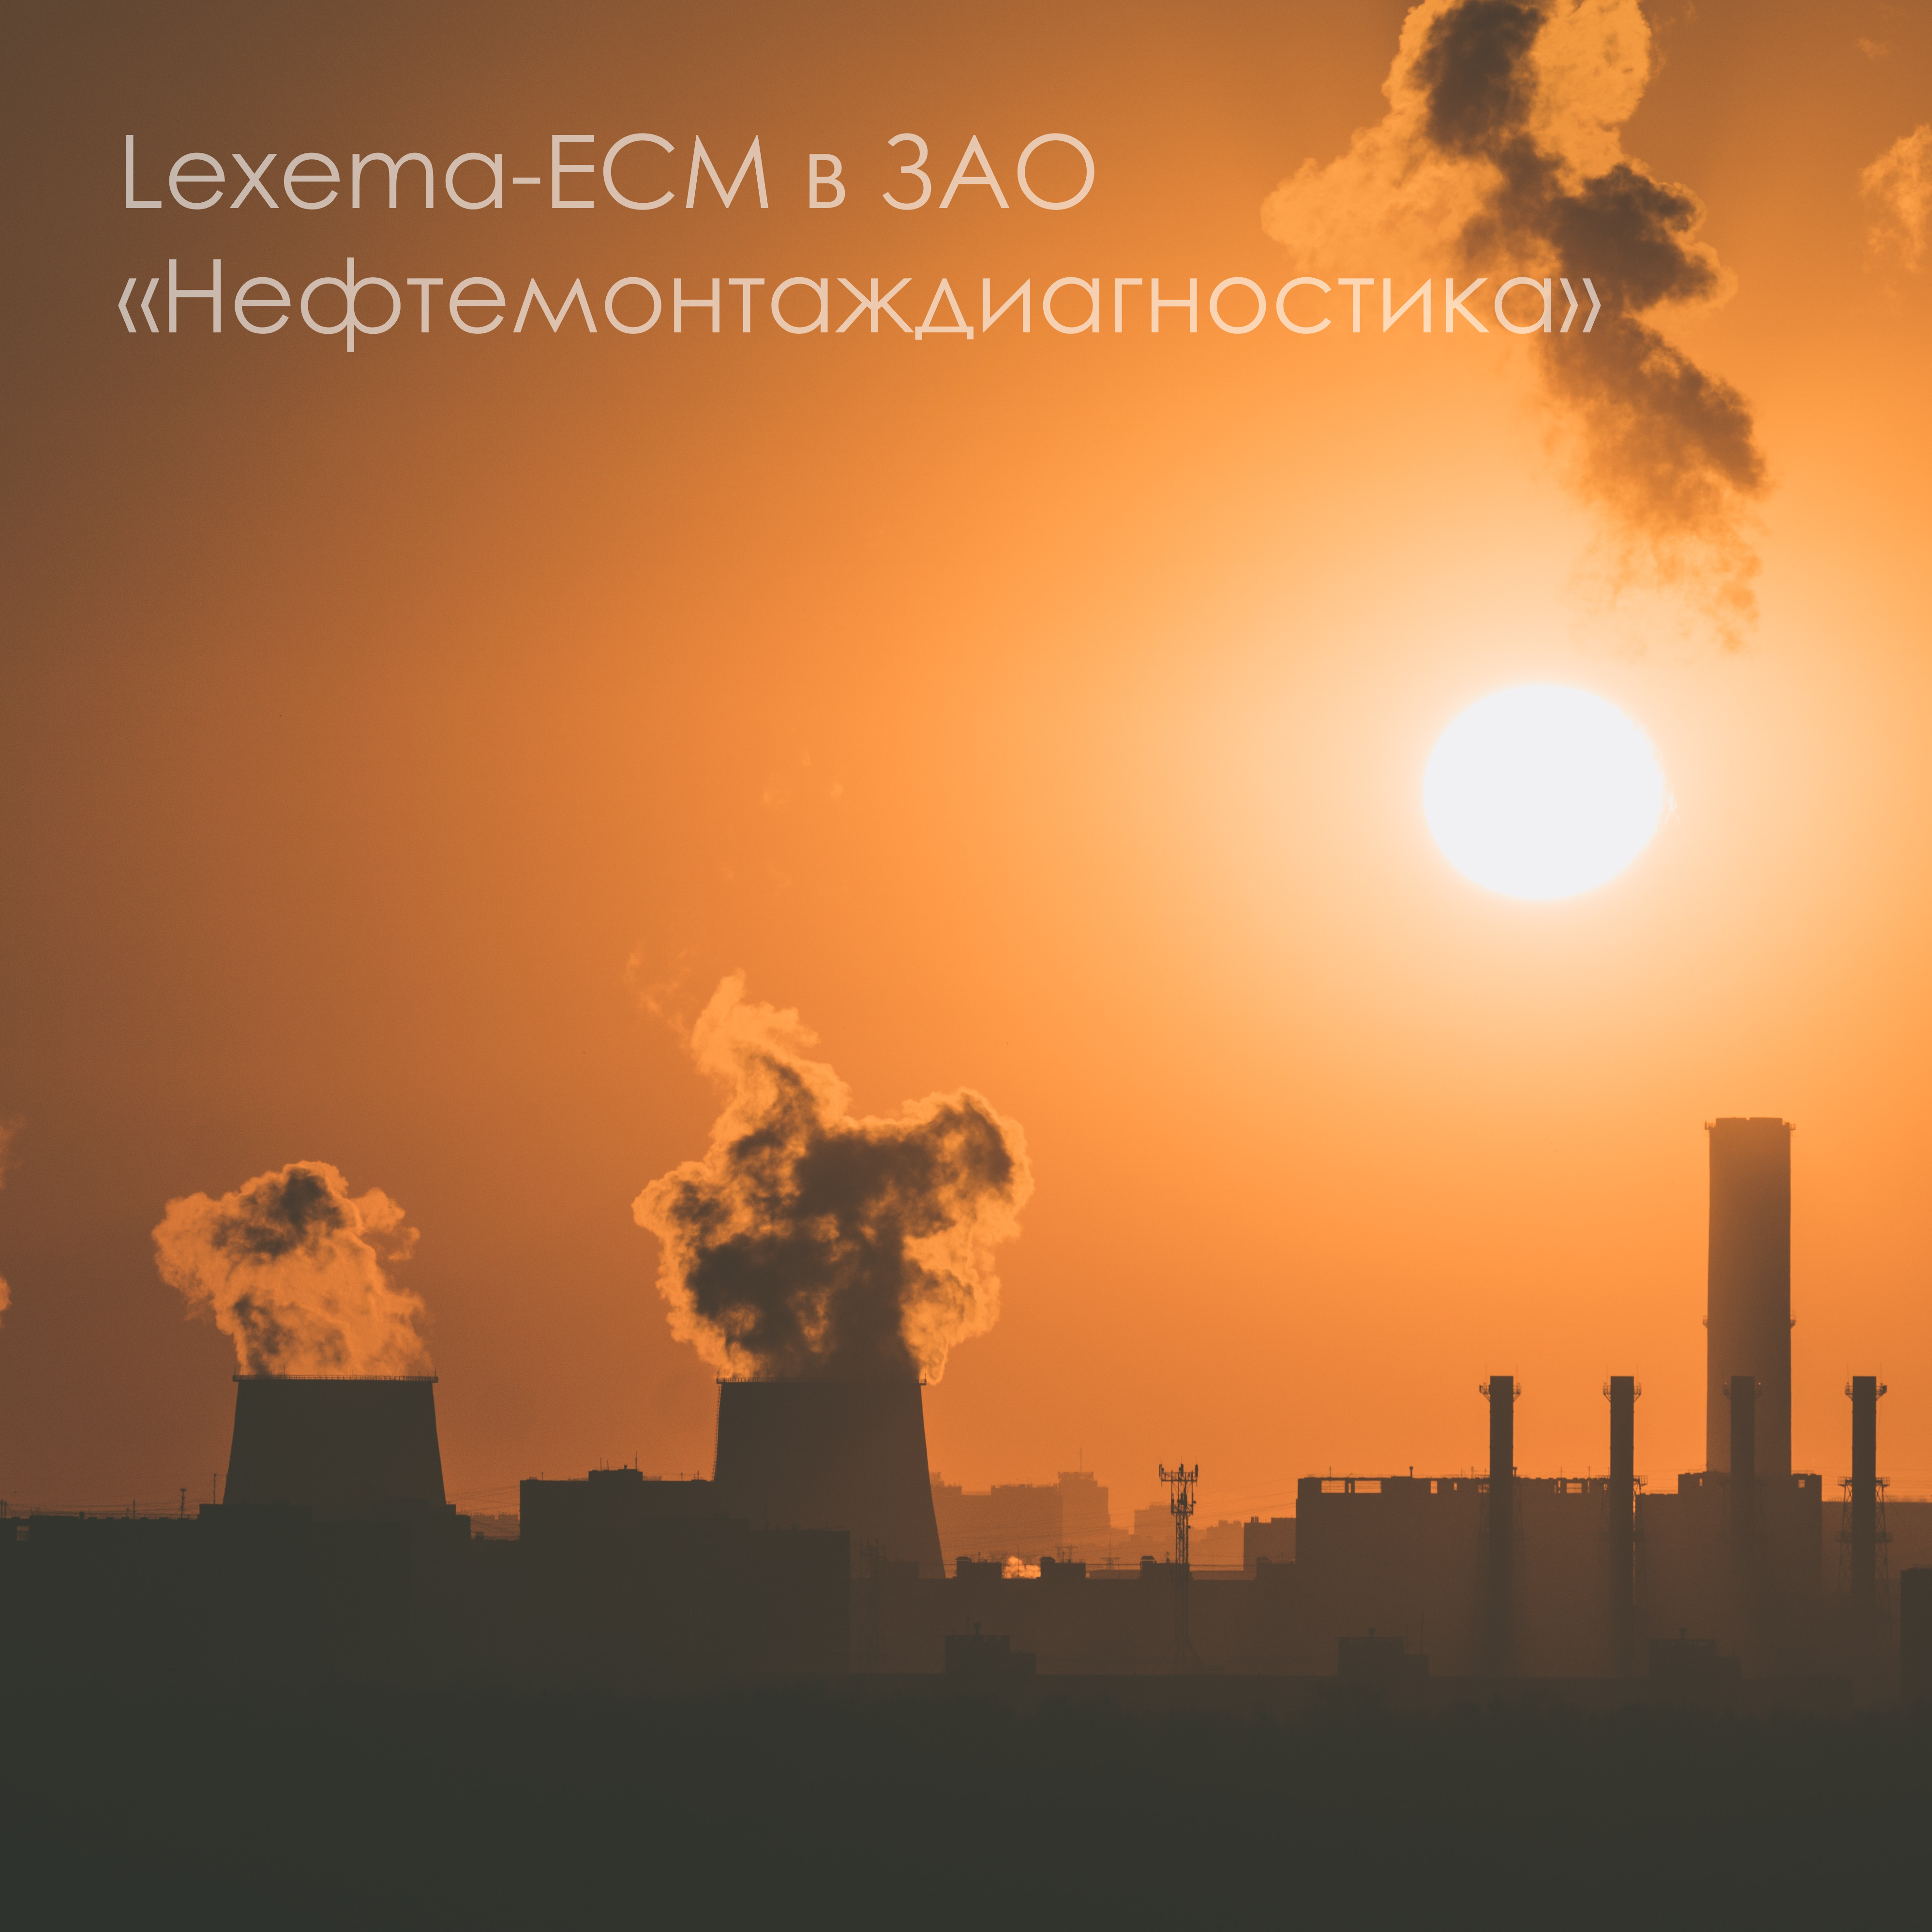 система электронного документооборота Lexema-ECM в ЗАО Нефтемонтаждиагностика